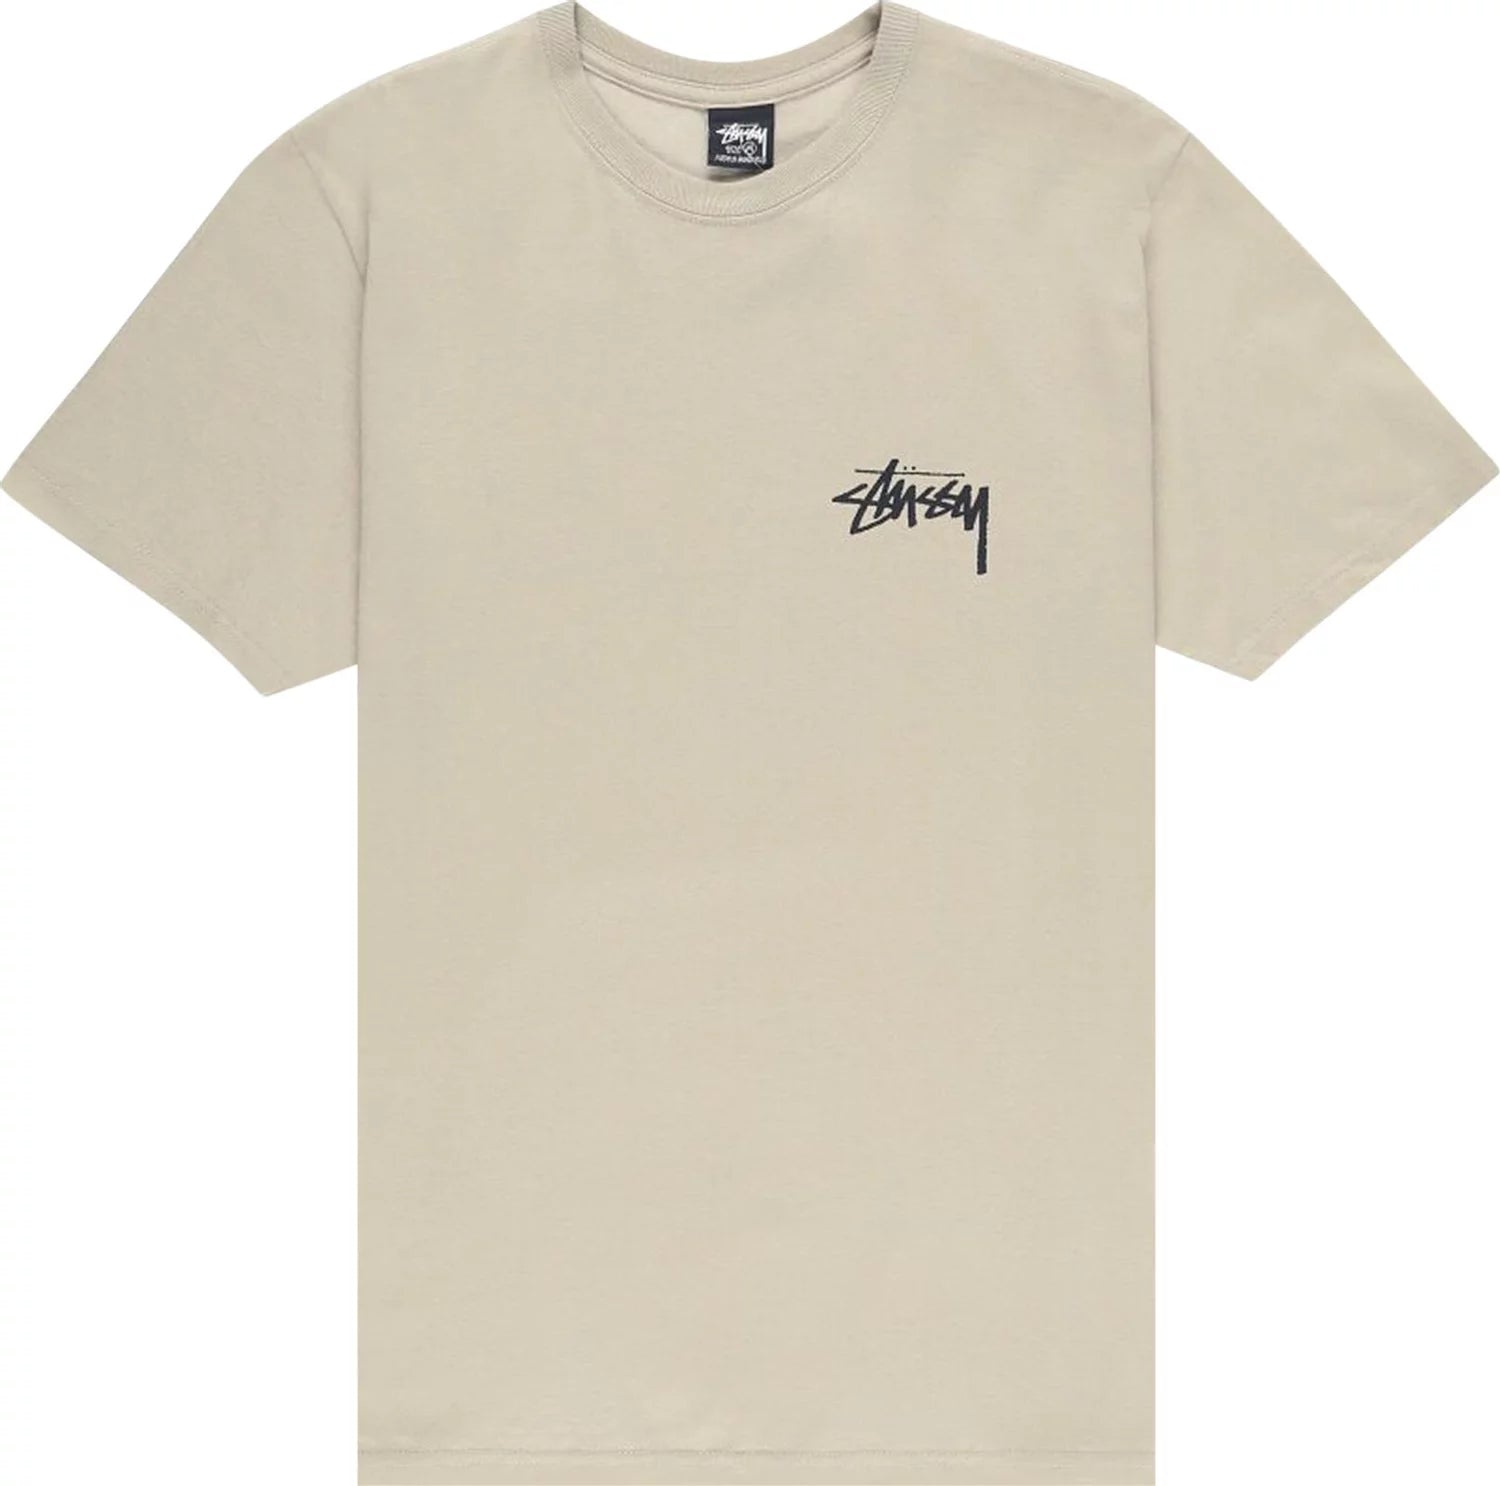 Stussy Dice Dot T-Shirt Khaki